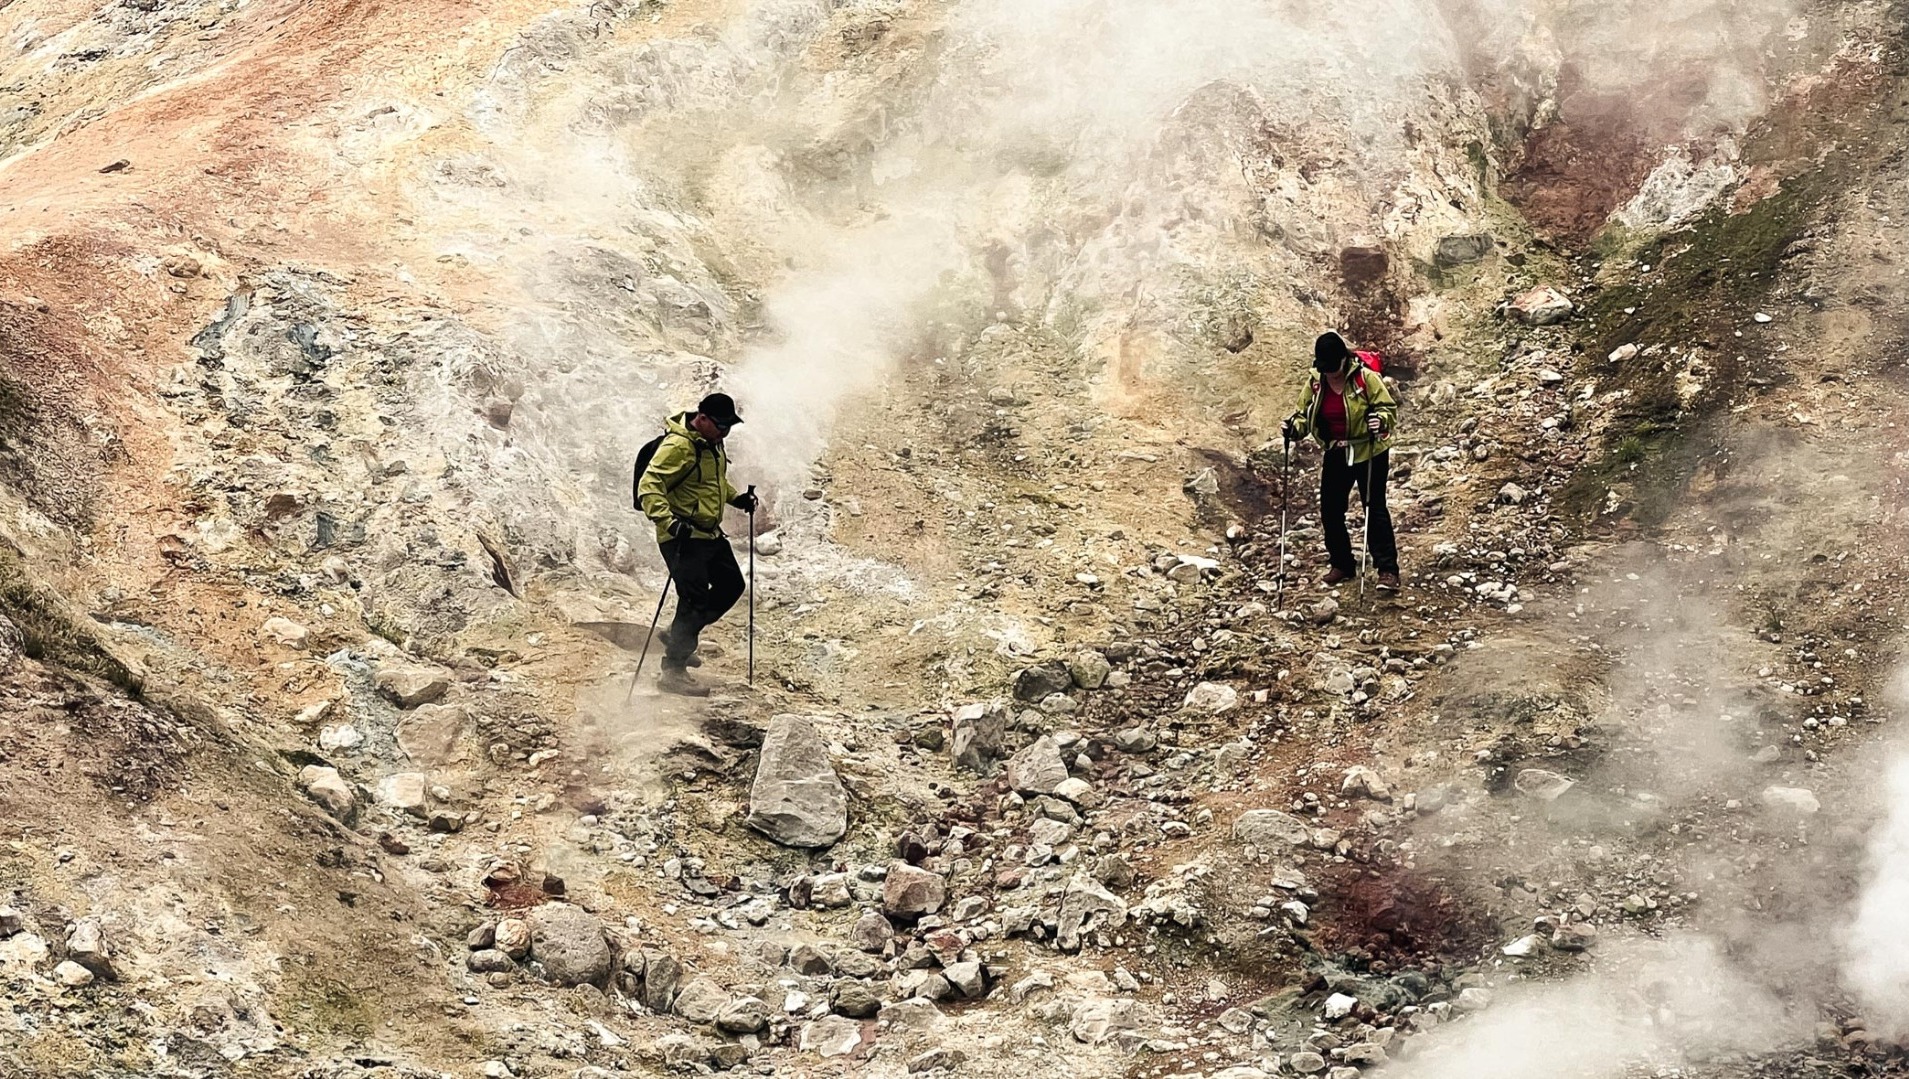 Услышал только имя: туристы из Уфы пропали во время восхождения к вулкану на Курилах